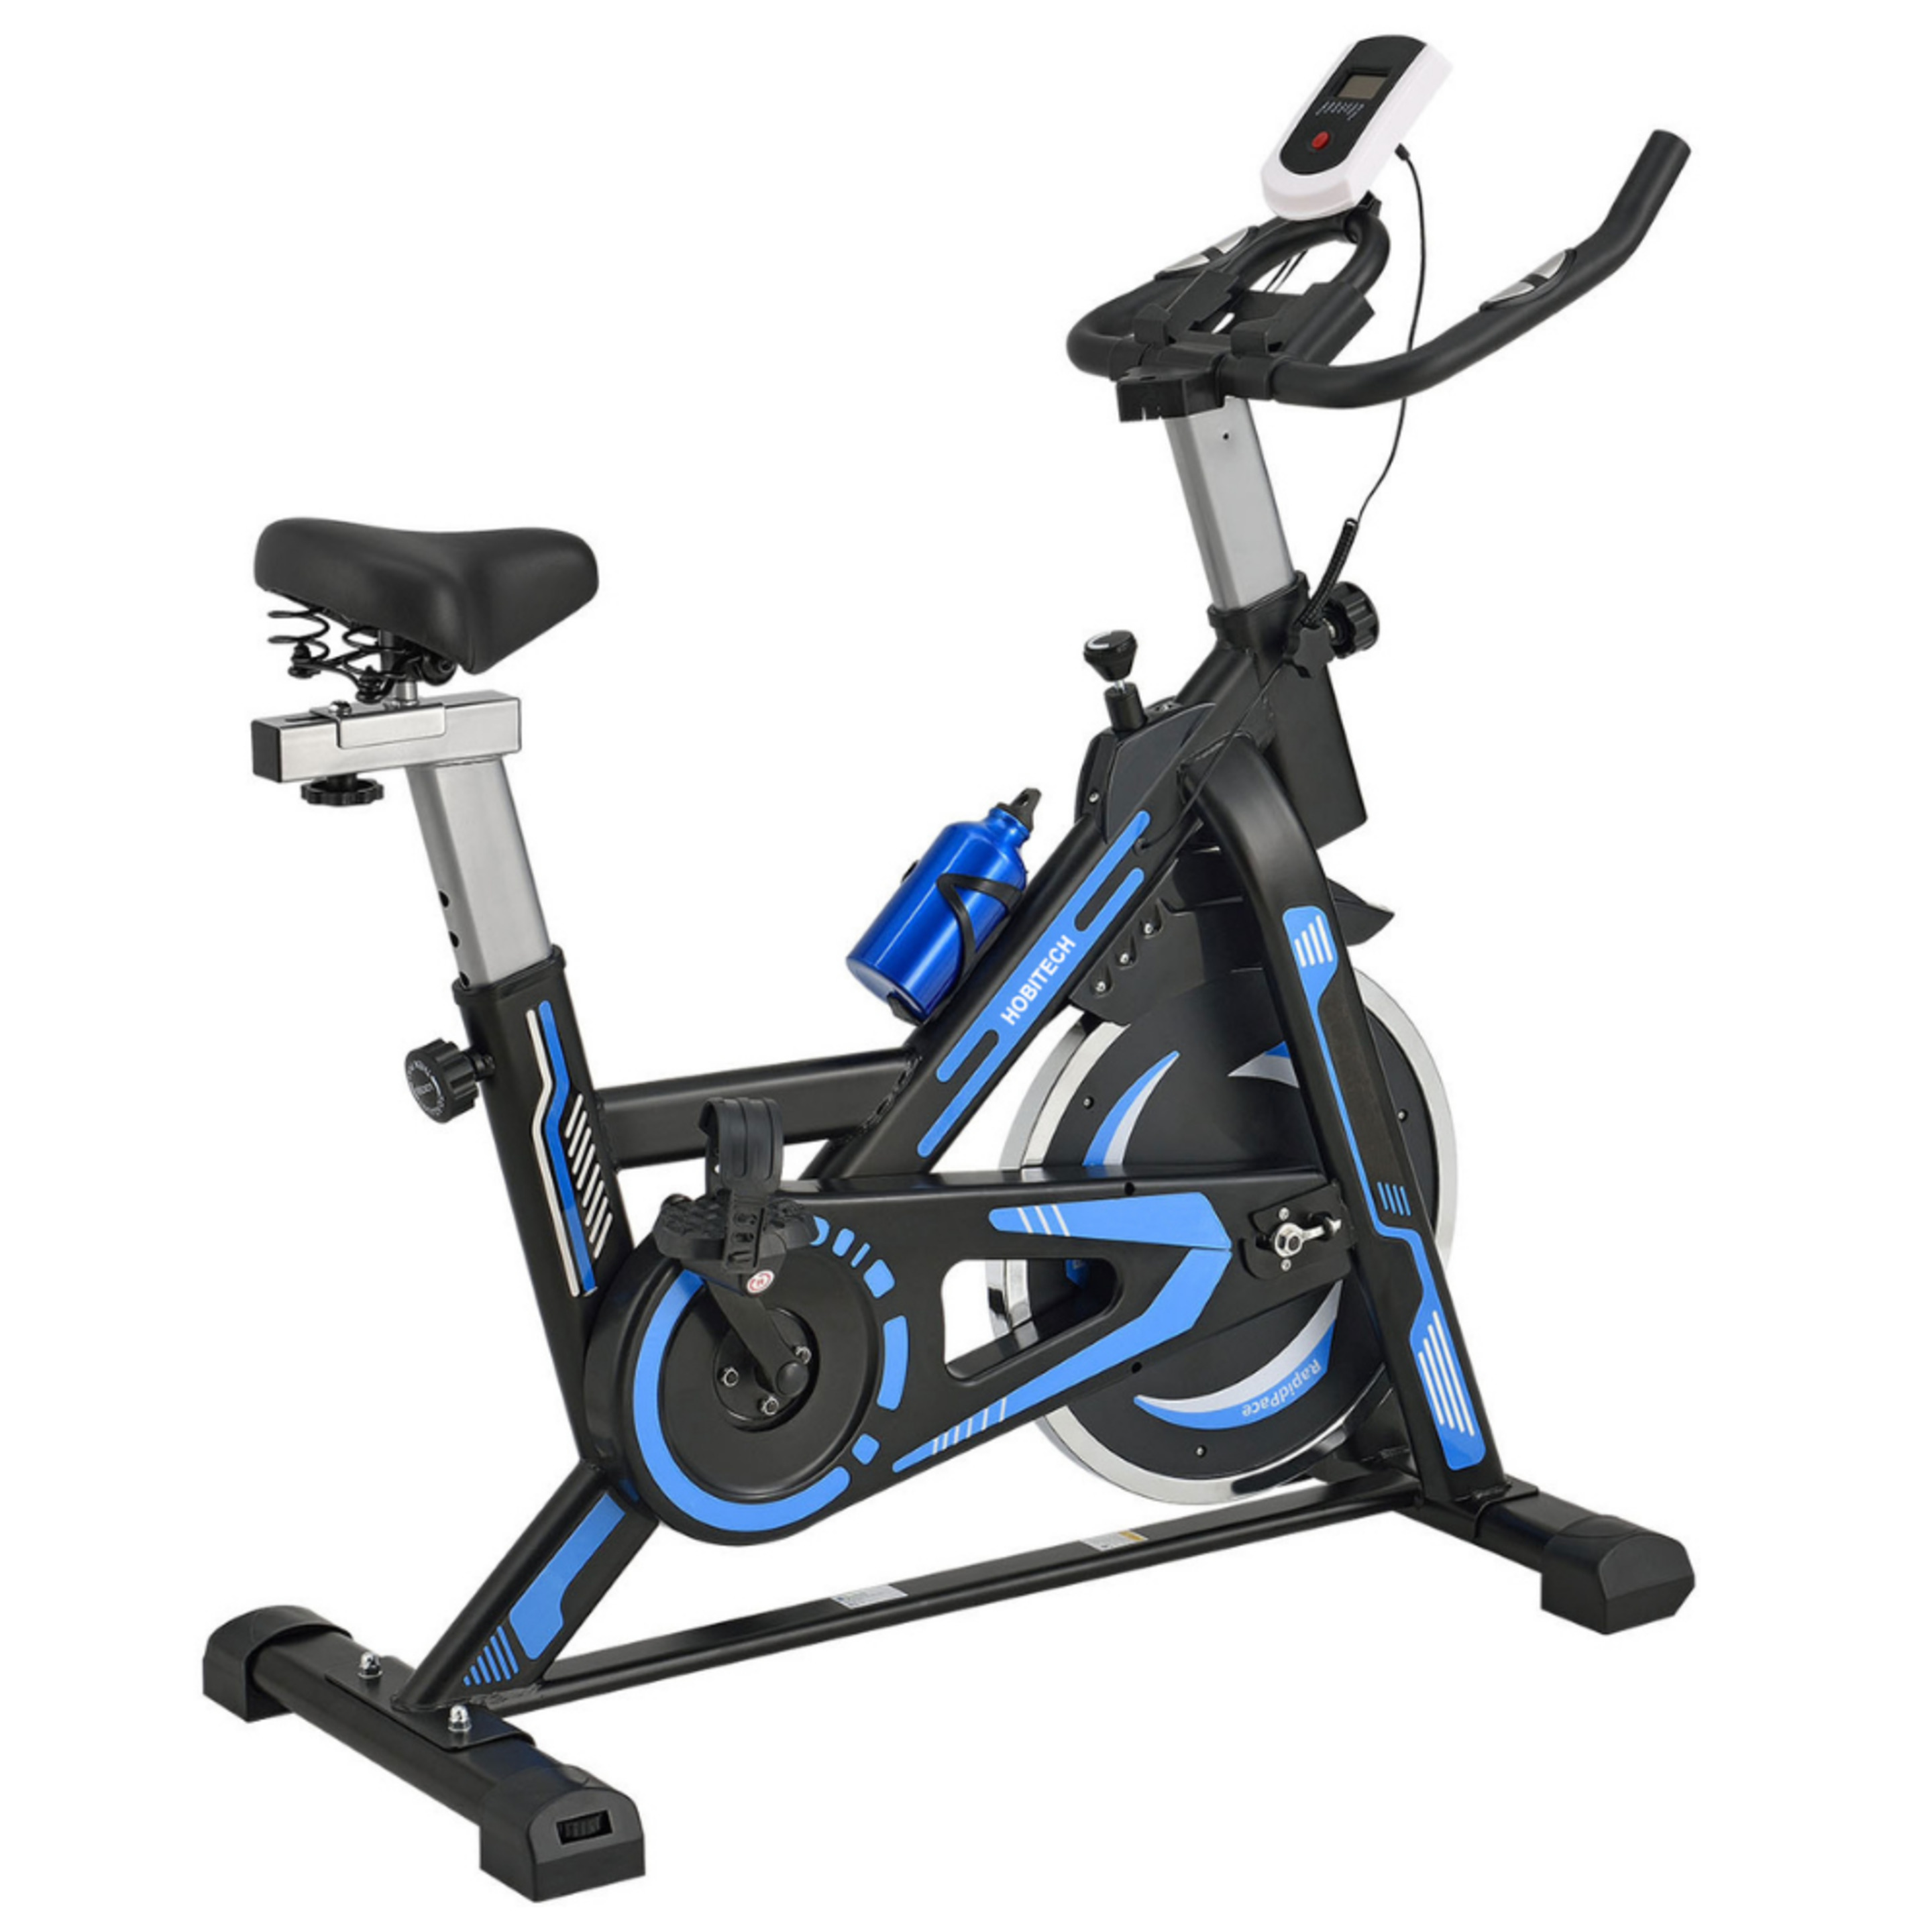 Bicicleta De Spinning Trébol Advance Con Volante De Inercia De 13 Kilos - Negro/Azul  MKP